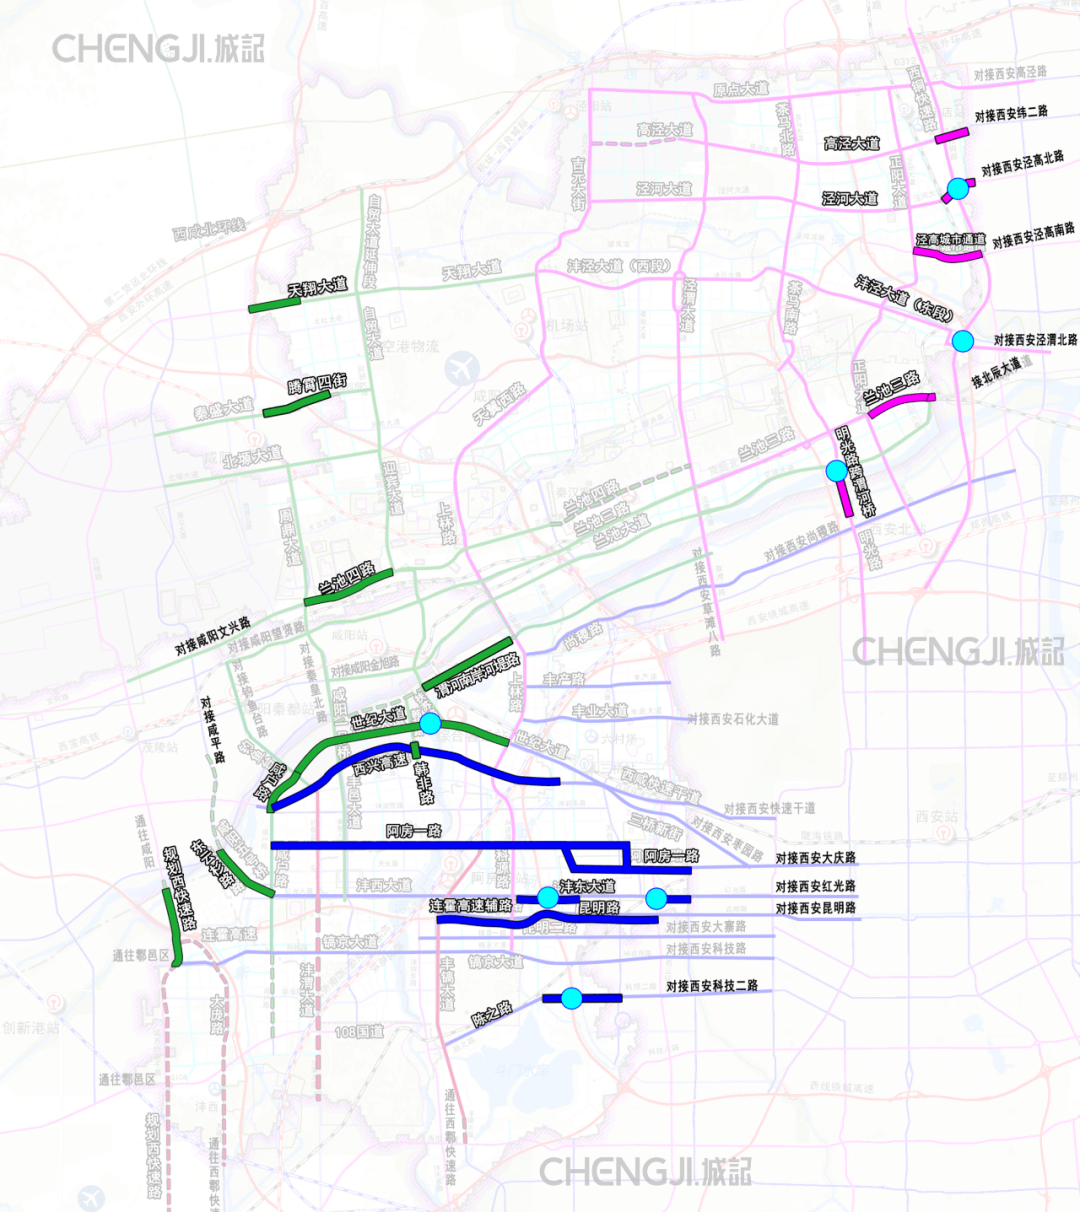 西安25环进程:南部局部通车,东部2026年建成